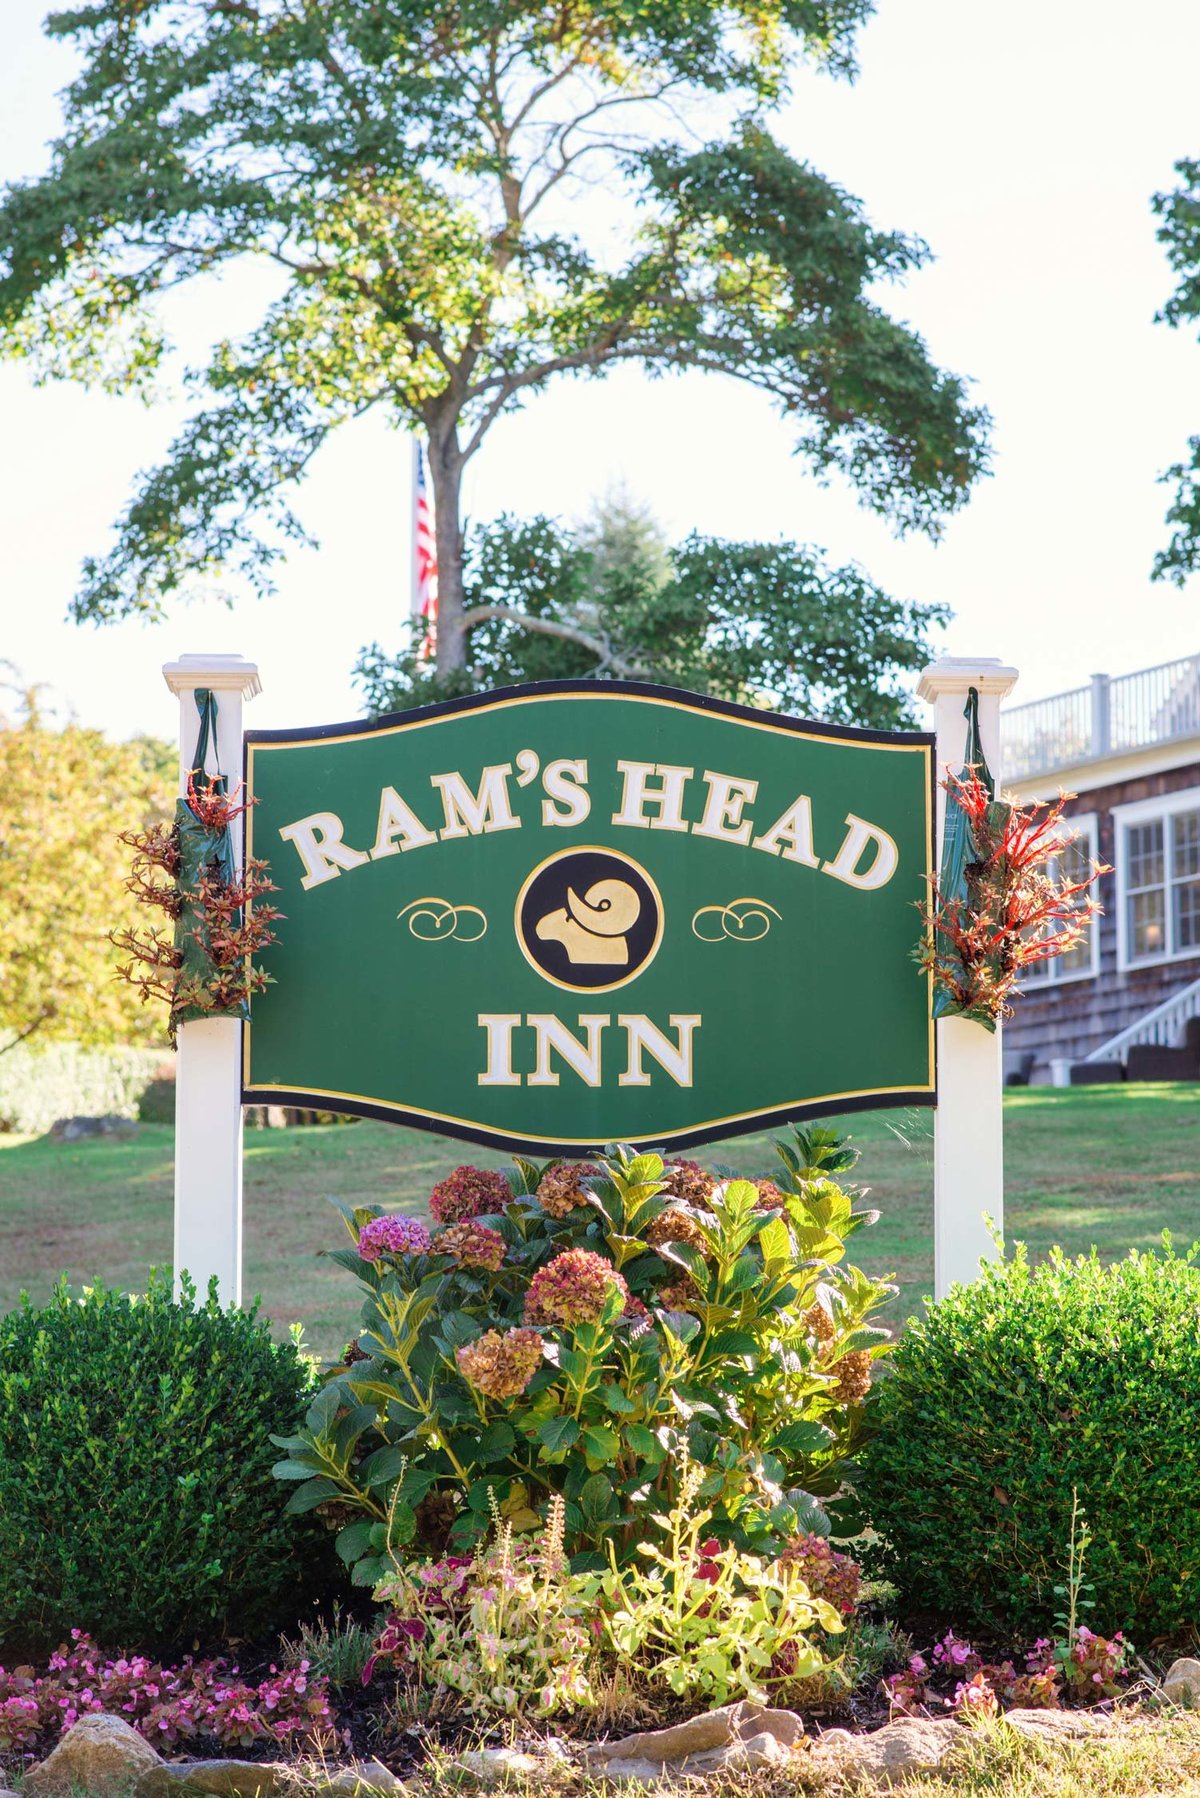 Ram's Head Inn sign at The Ram's Head Inn